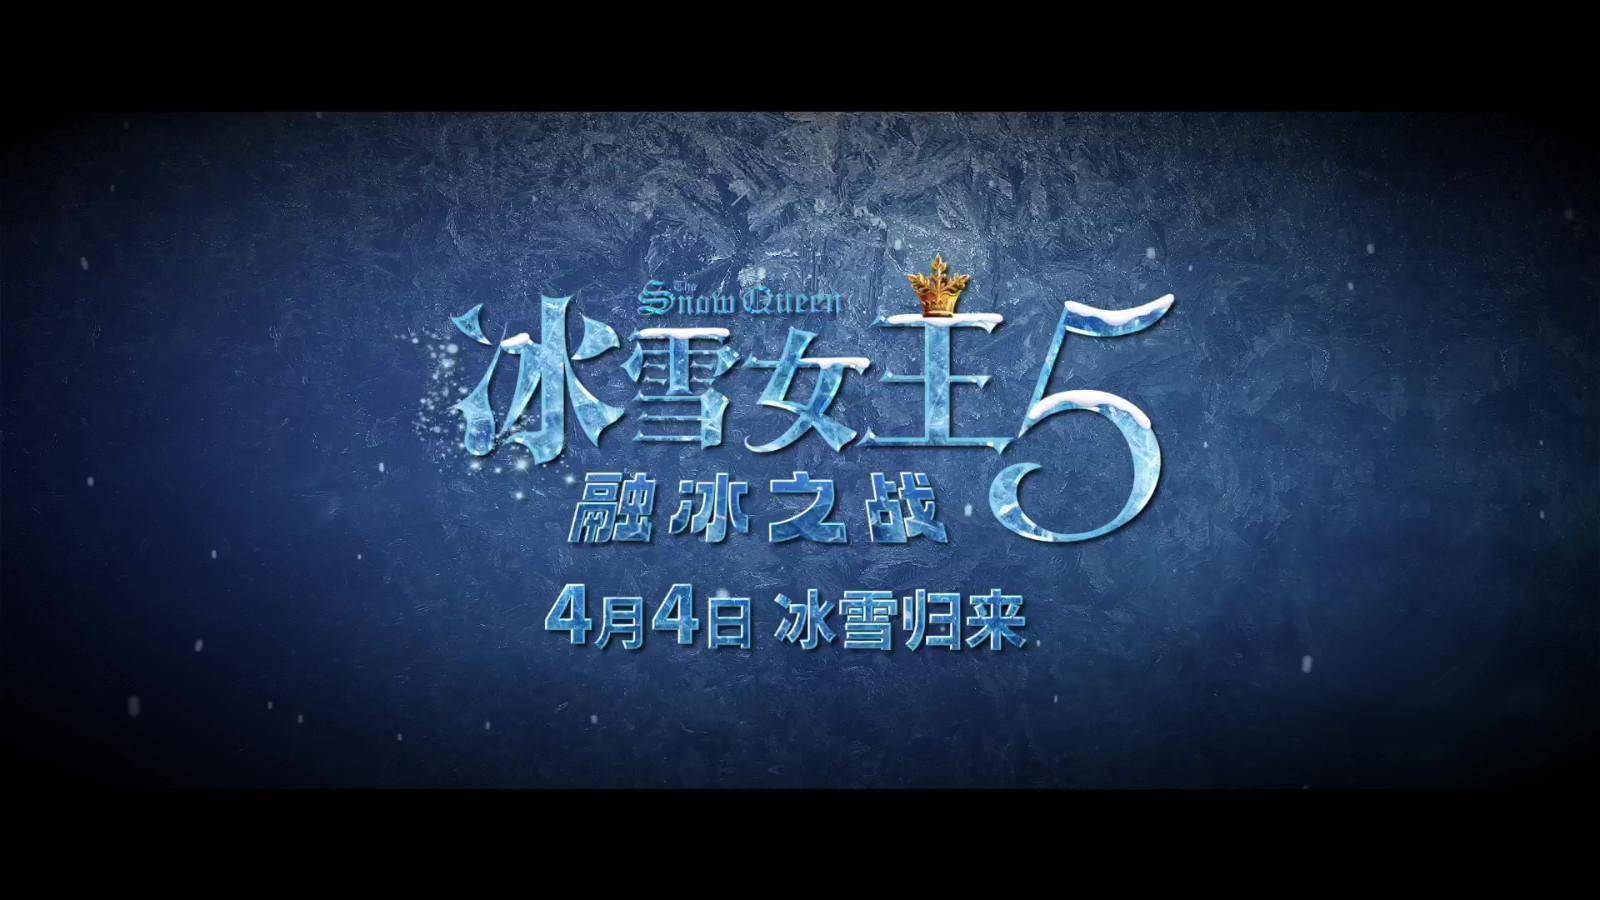 冰雪女王5融冰之战定档预告4月4日上映